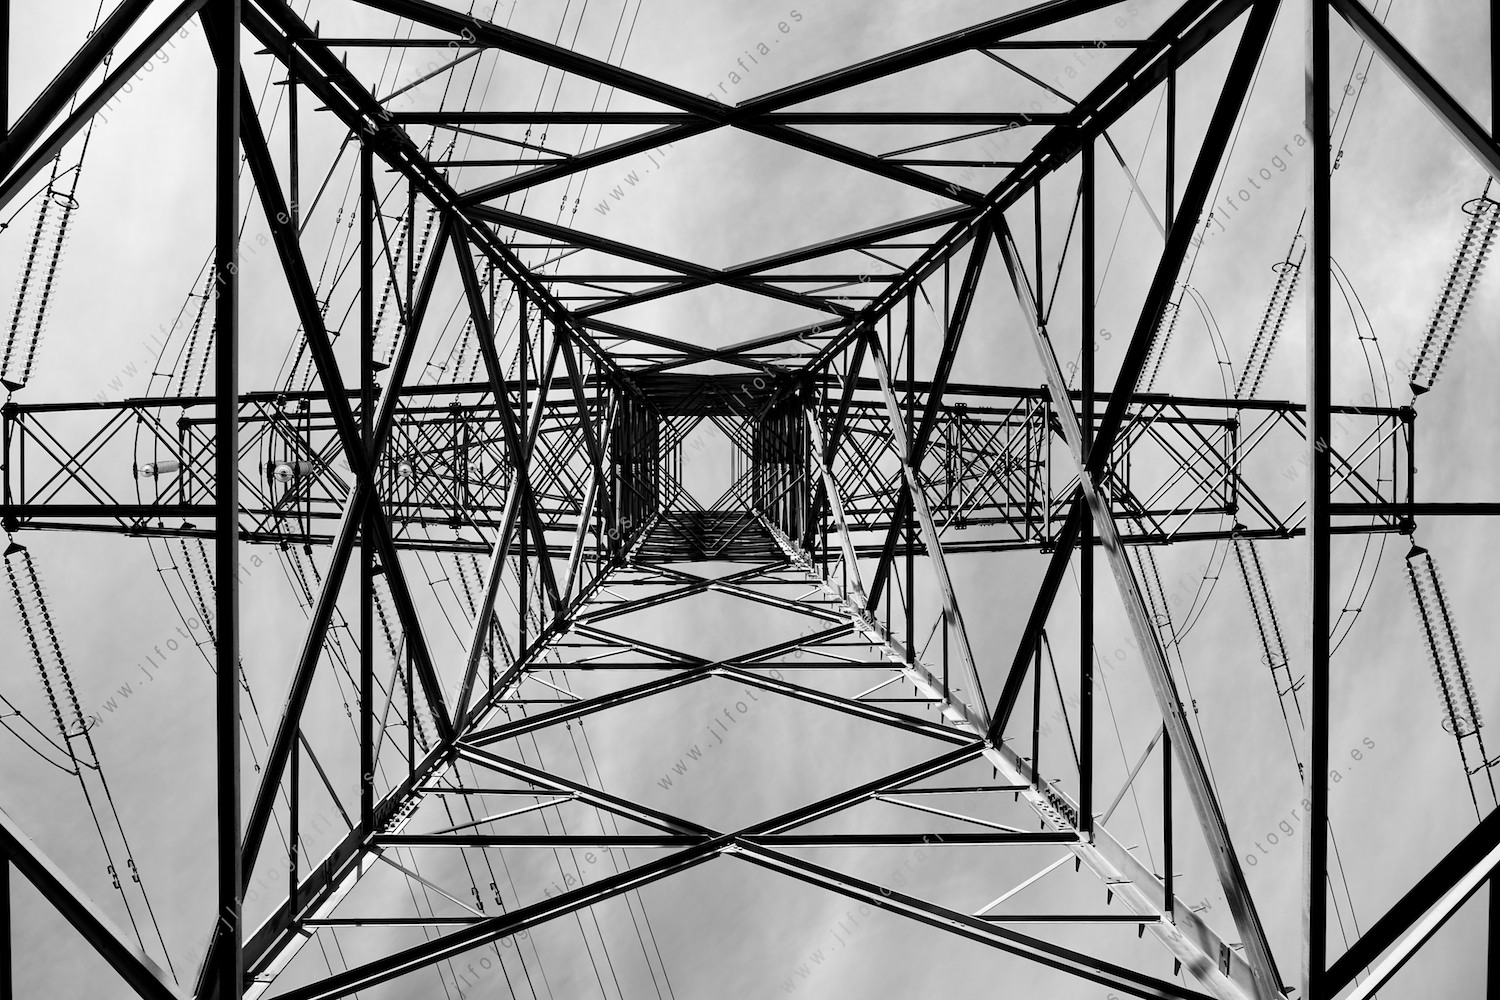 Torre de la red eléctrica. Juevo visual de simetrías y fugas. Composición fotográfica.